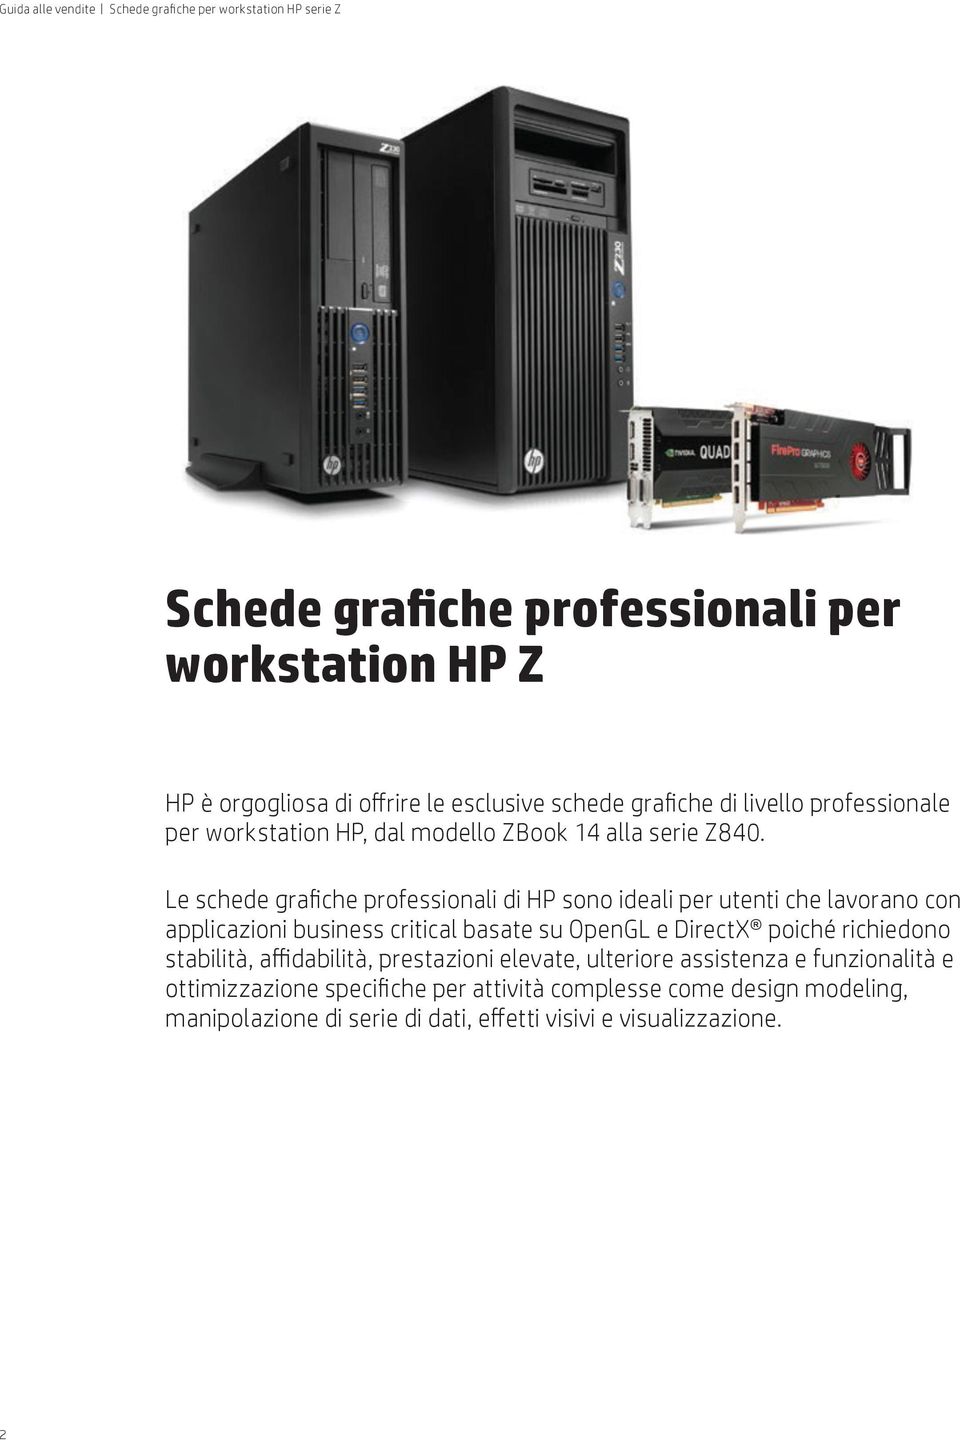 Le schede grafiche professionali di HP sono ideali per utenti che lavorano con applicazioni business critical basate su OpenGL e DirectX